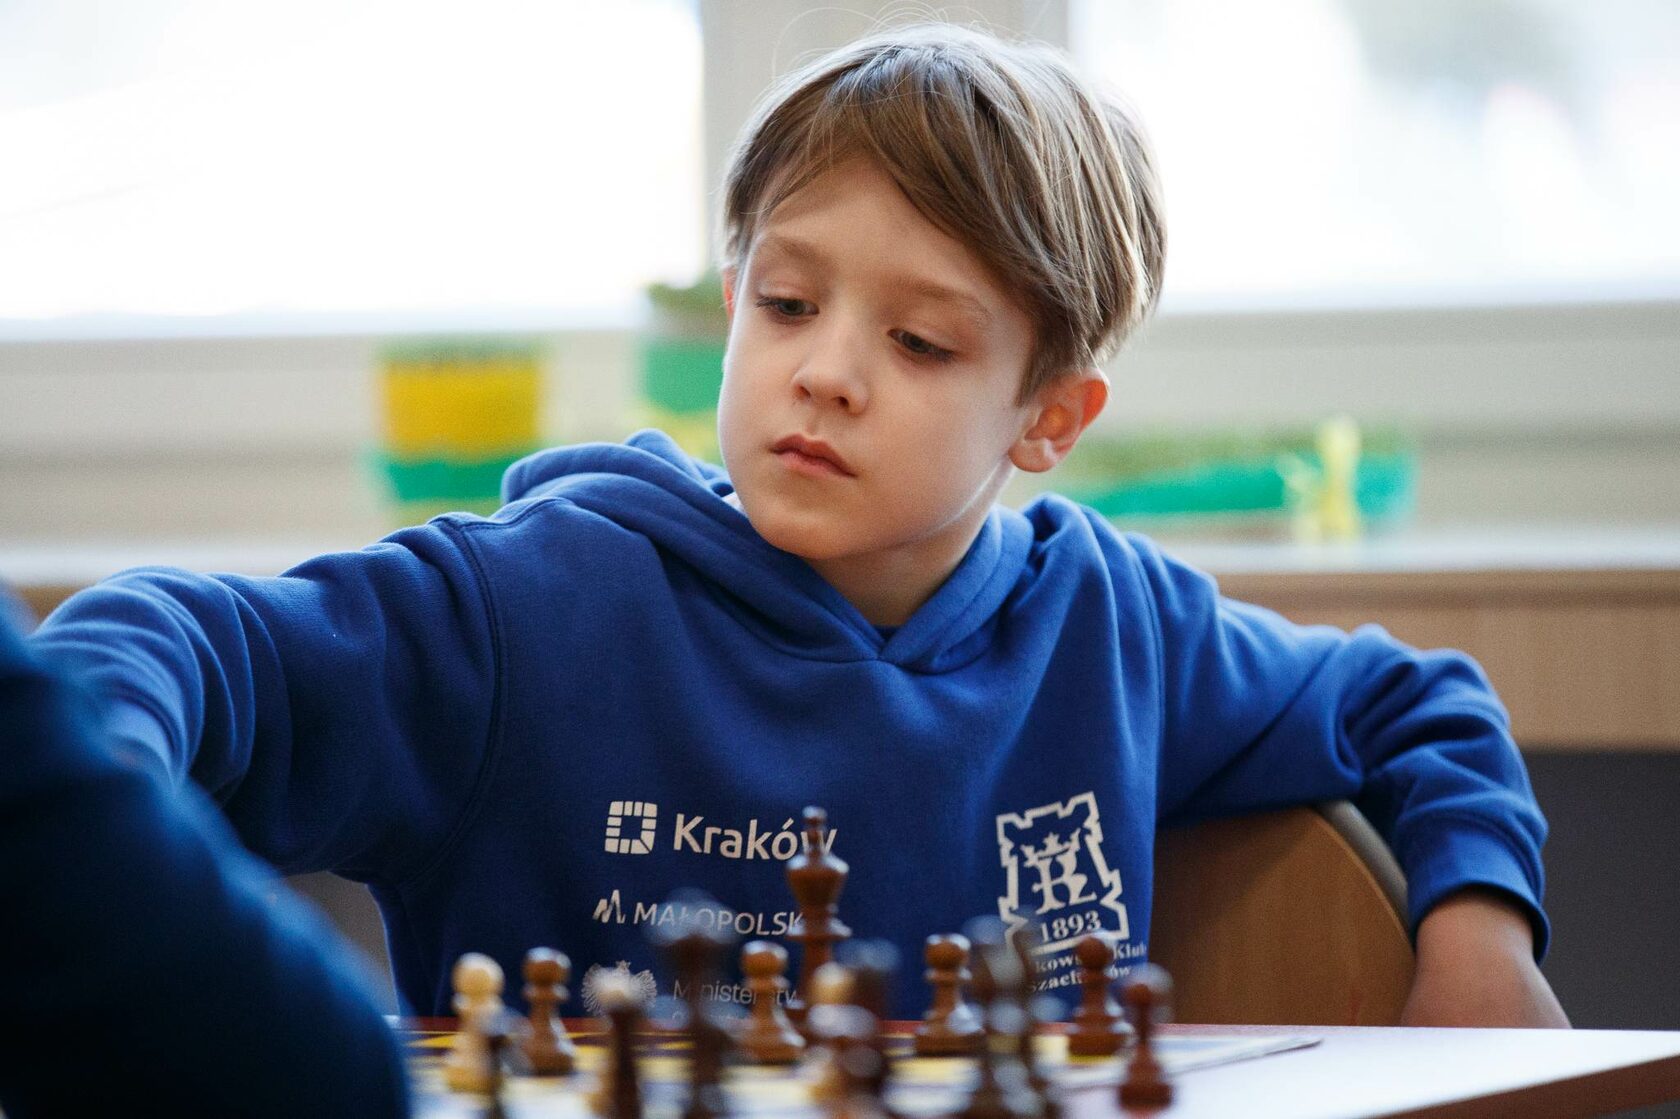 В школу после 8 лет. Шахматы "школьник". Карпов ученика шахматы. Картинка для раздела сайта шахматы и школьники.